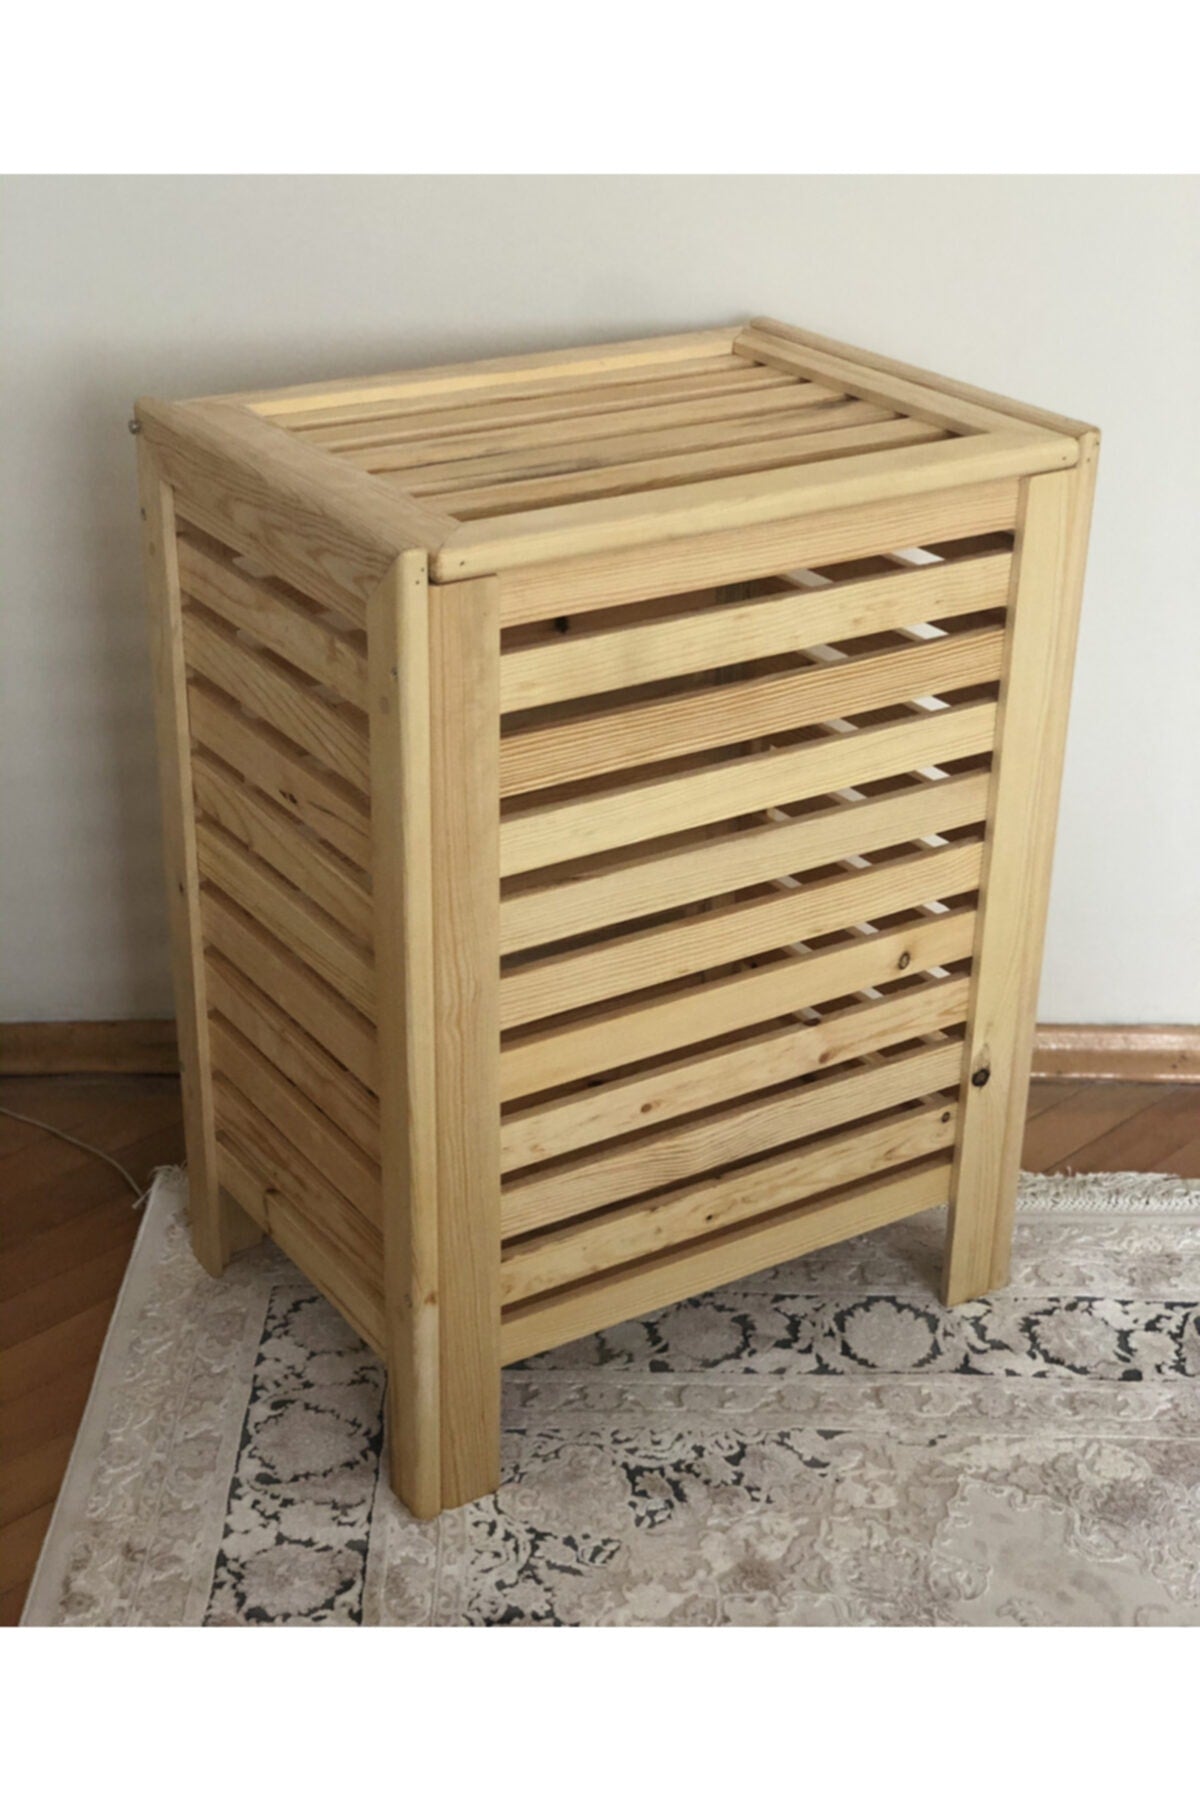 Großer Wäschekorb aus Holz zur Aufbewahrung